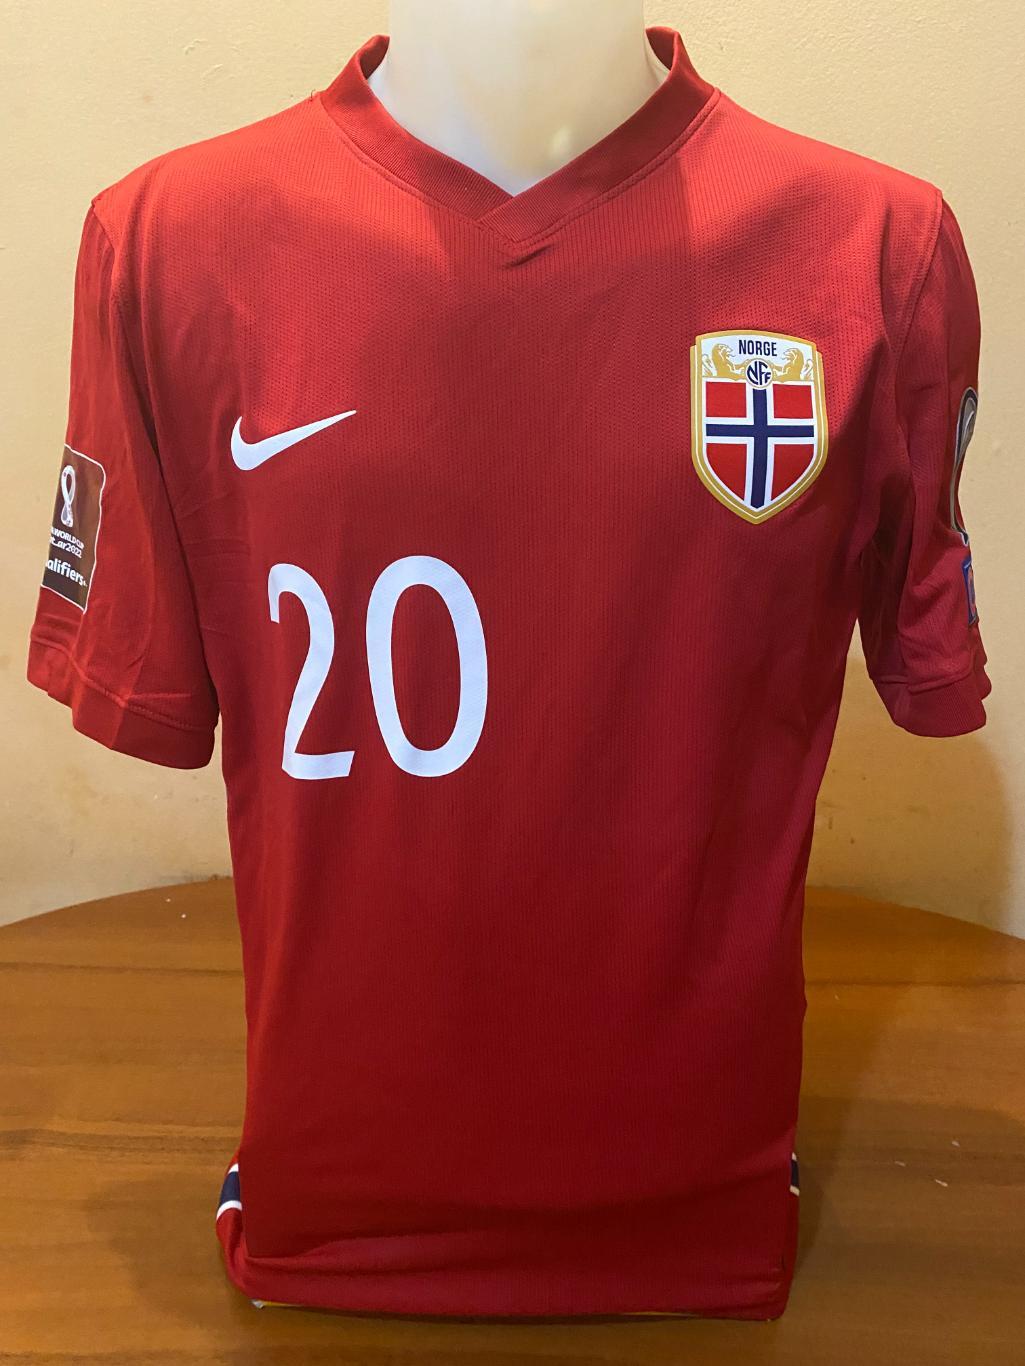 Официальная игровая майка сборной Норвегии 2021/2022